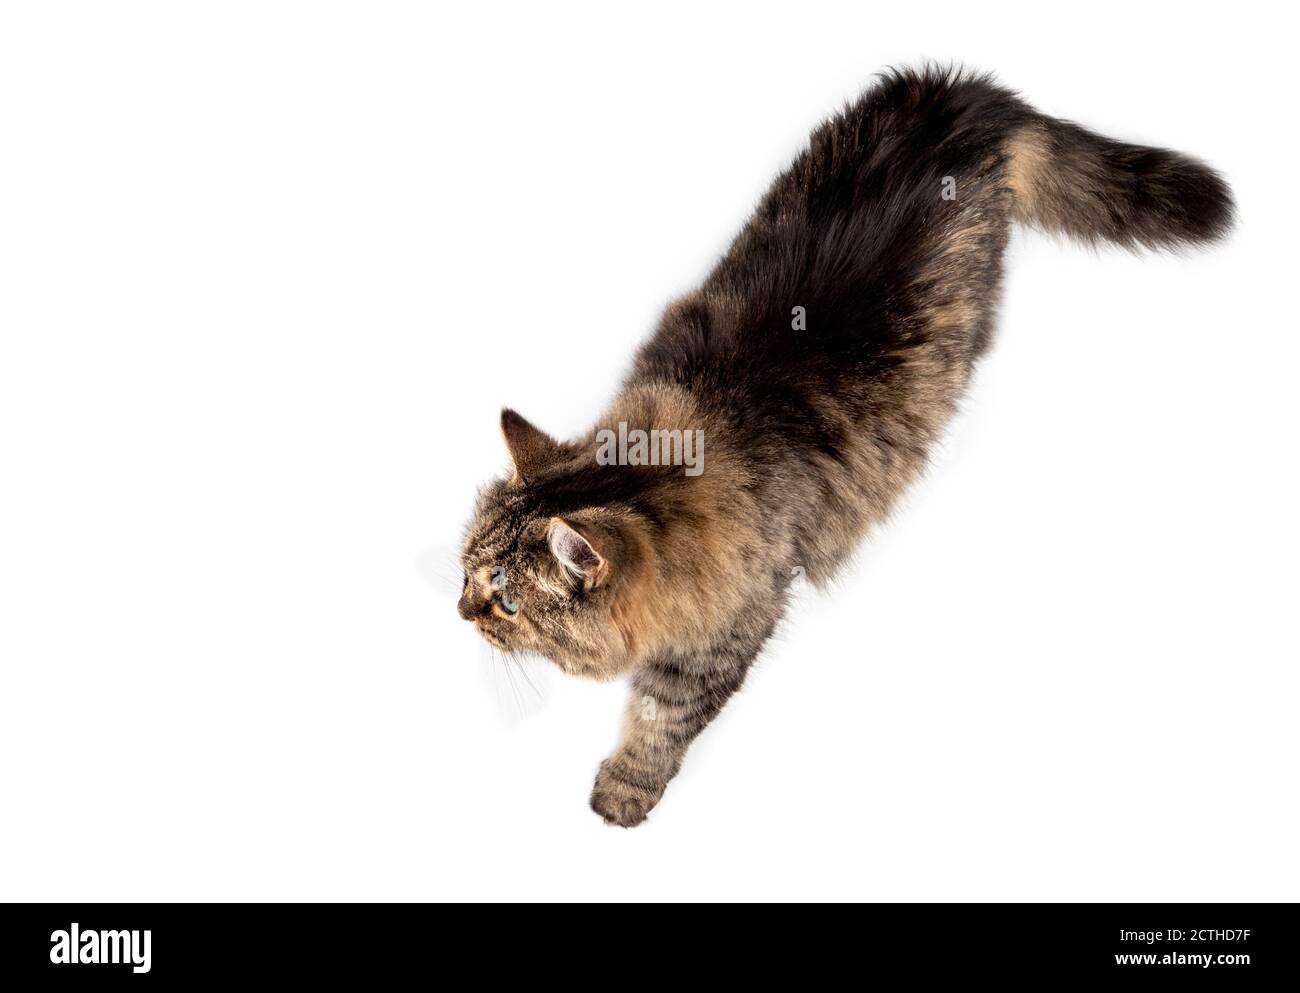 Draufsicht auf eine Katze, die entspannt von rechts nach links geht. Ganzer  Körper von langen Haaren weibliche tabby ältere Katze (14 Jahre) mit einer  Pfote nach vorne. Isoliert Stockfotografie - Alamy